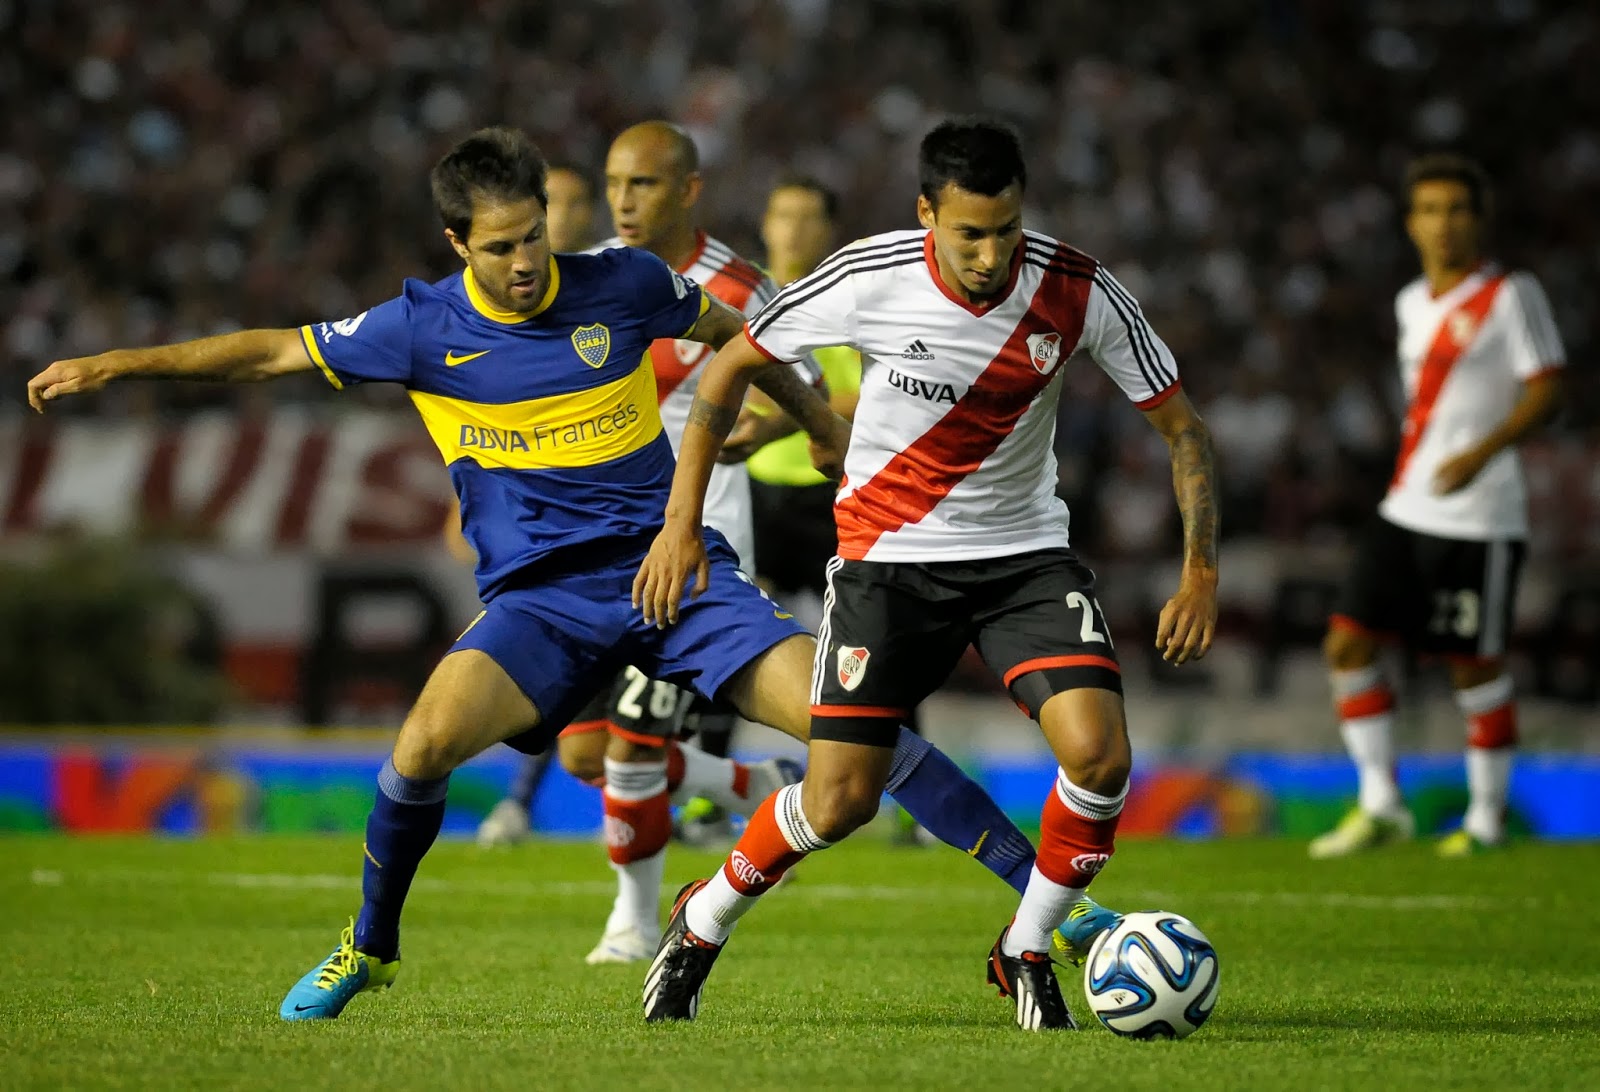 River Plate enfrenta a Boca Juniors por el Torneo de Verano en MDQ